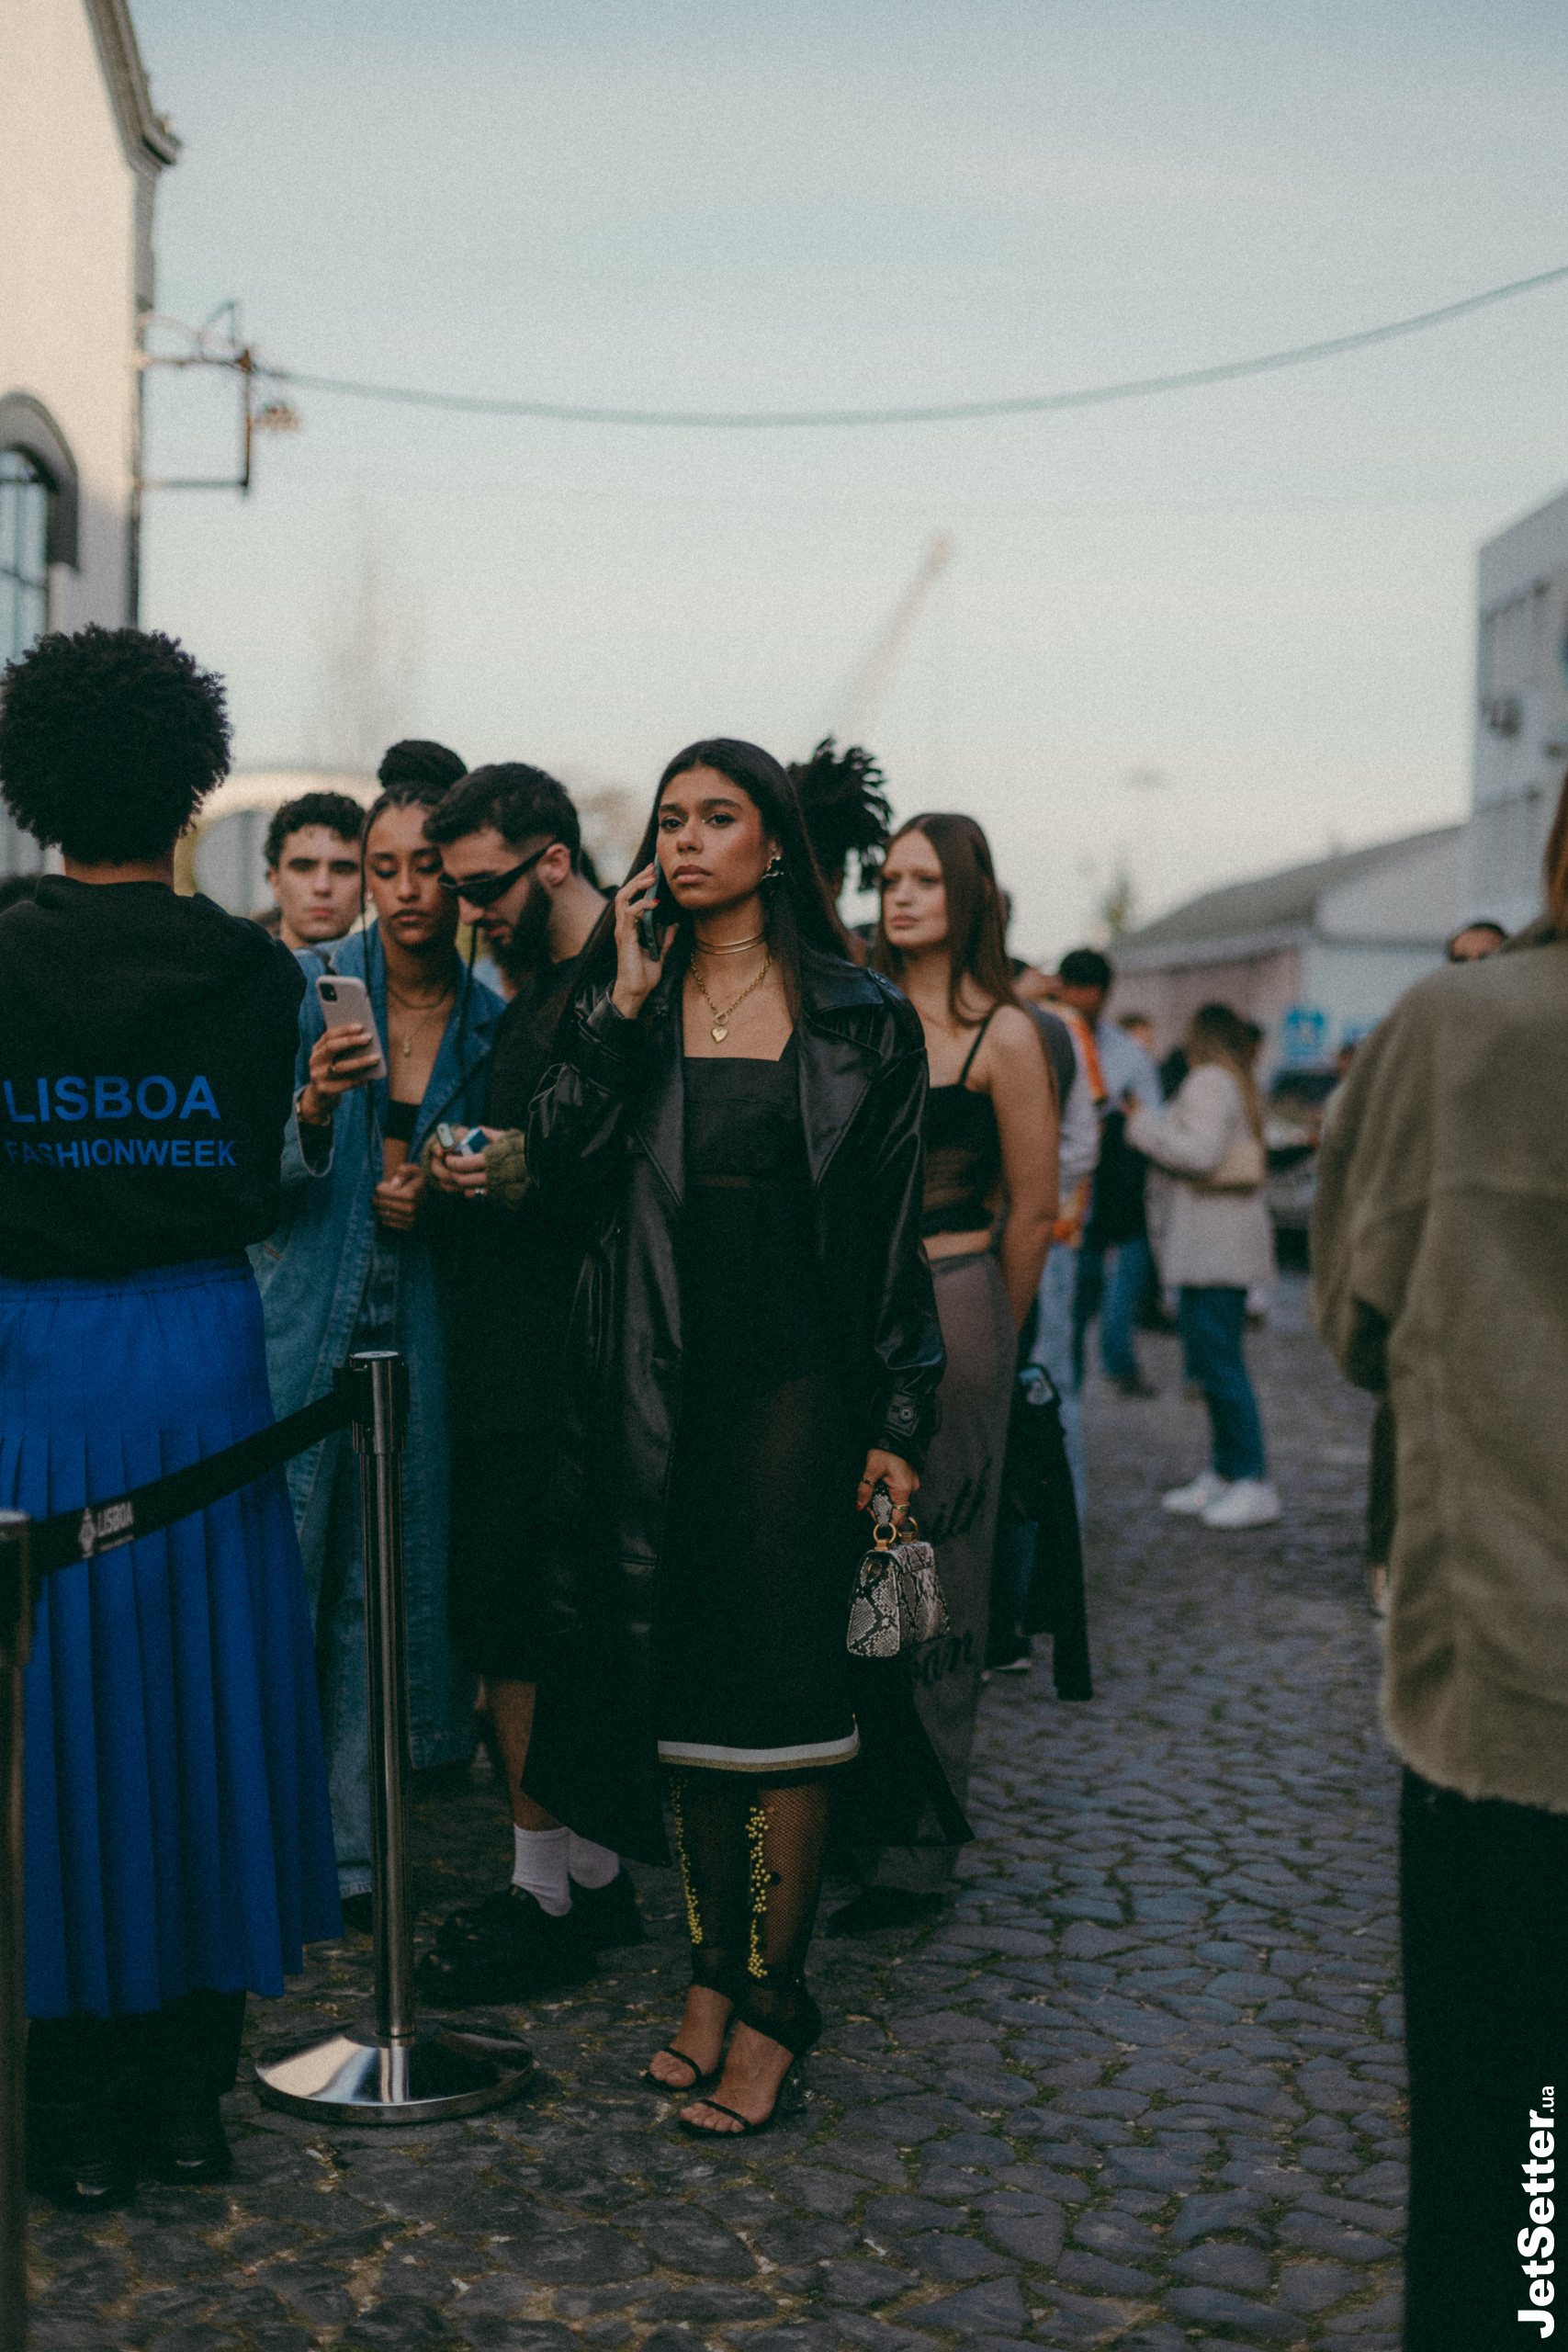 Мотиви Арлекіно та сліди від помади: Тиждень моди в Лісабоні у 35 фото